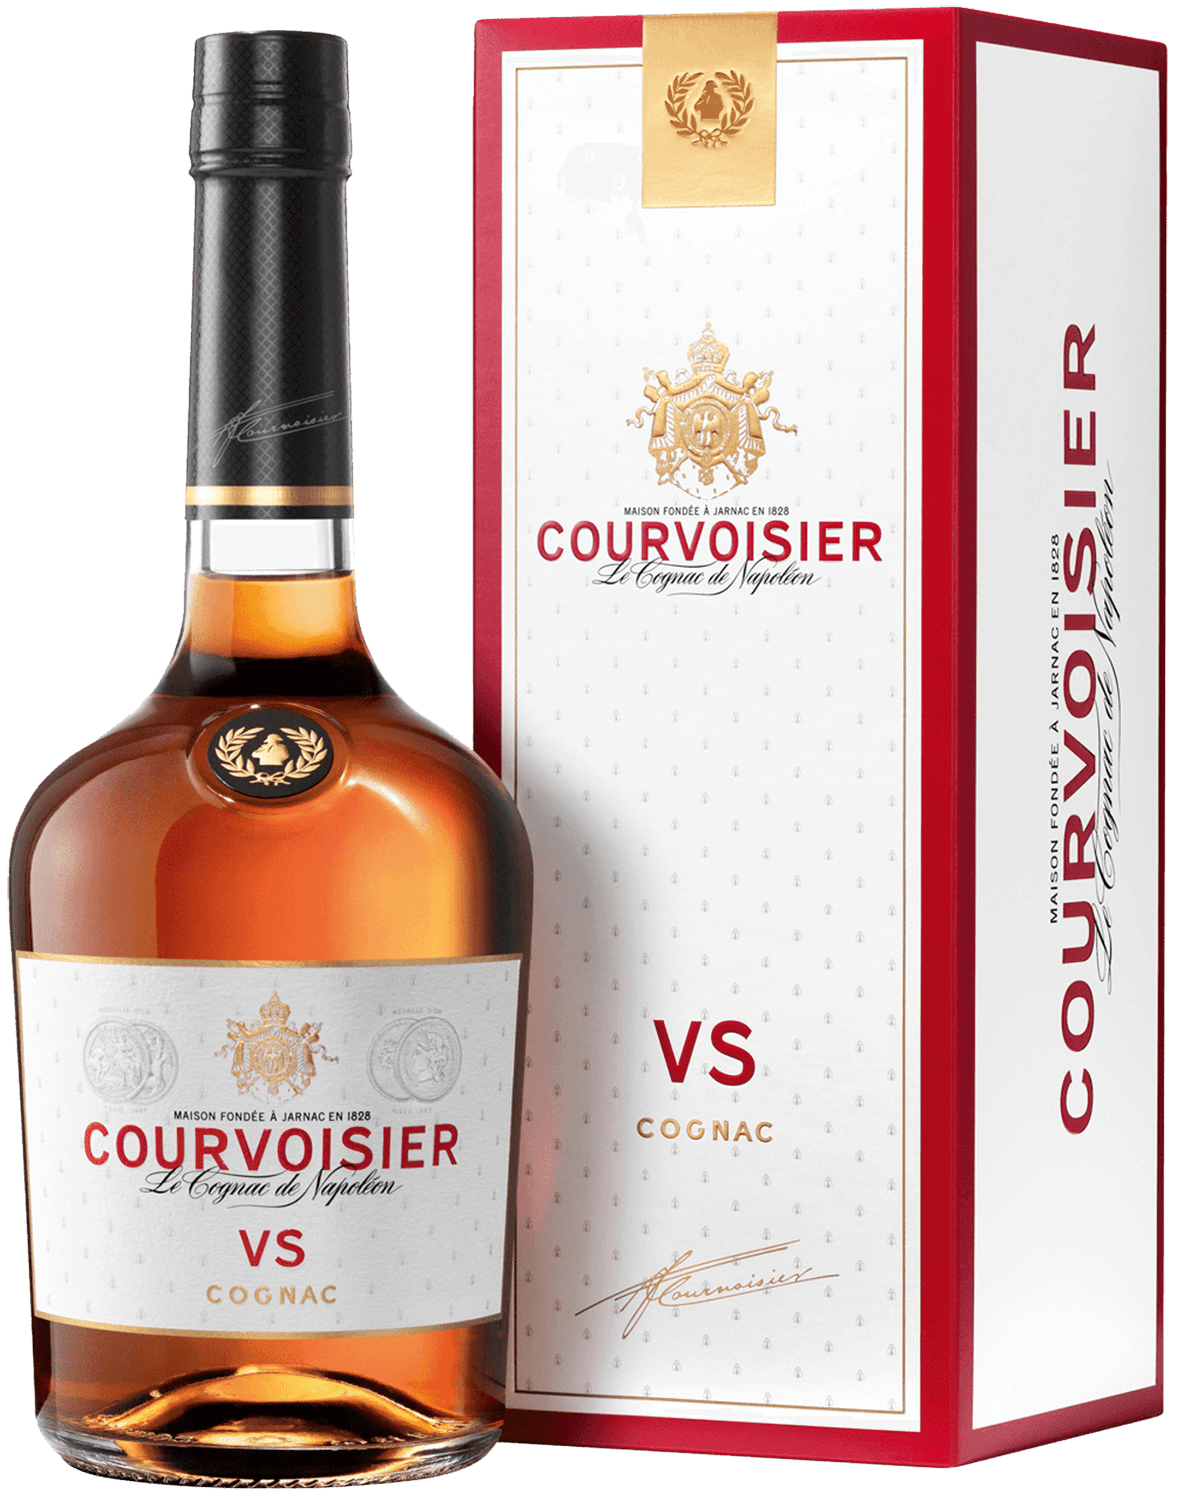 Courvoisier VS (gift box) camus vs gift box